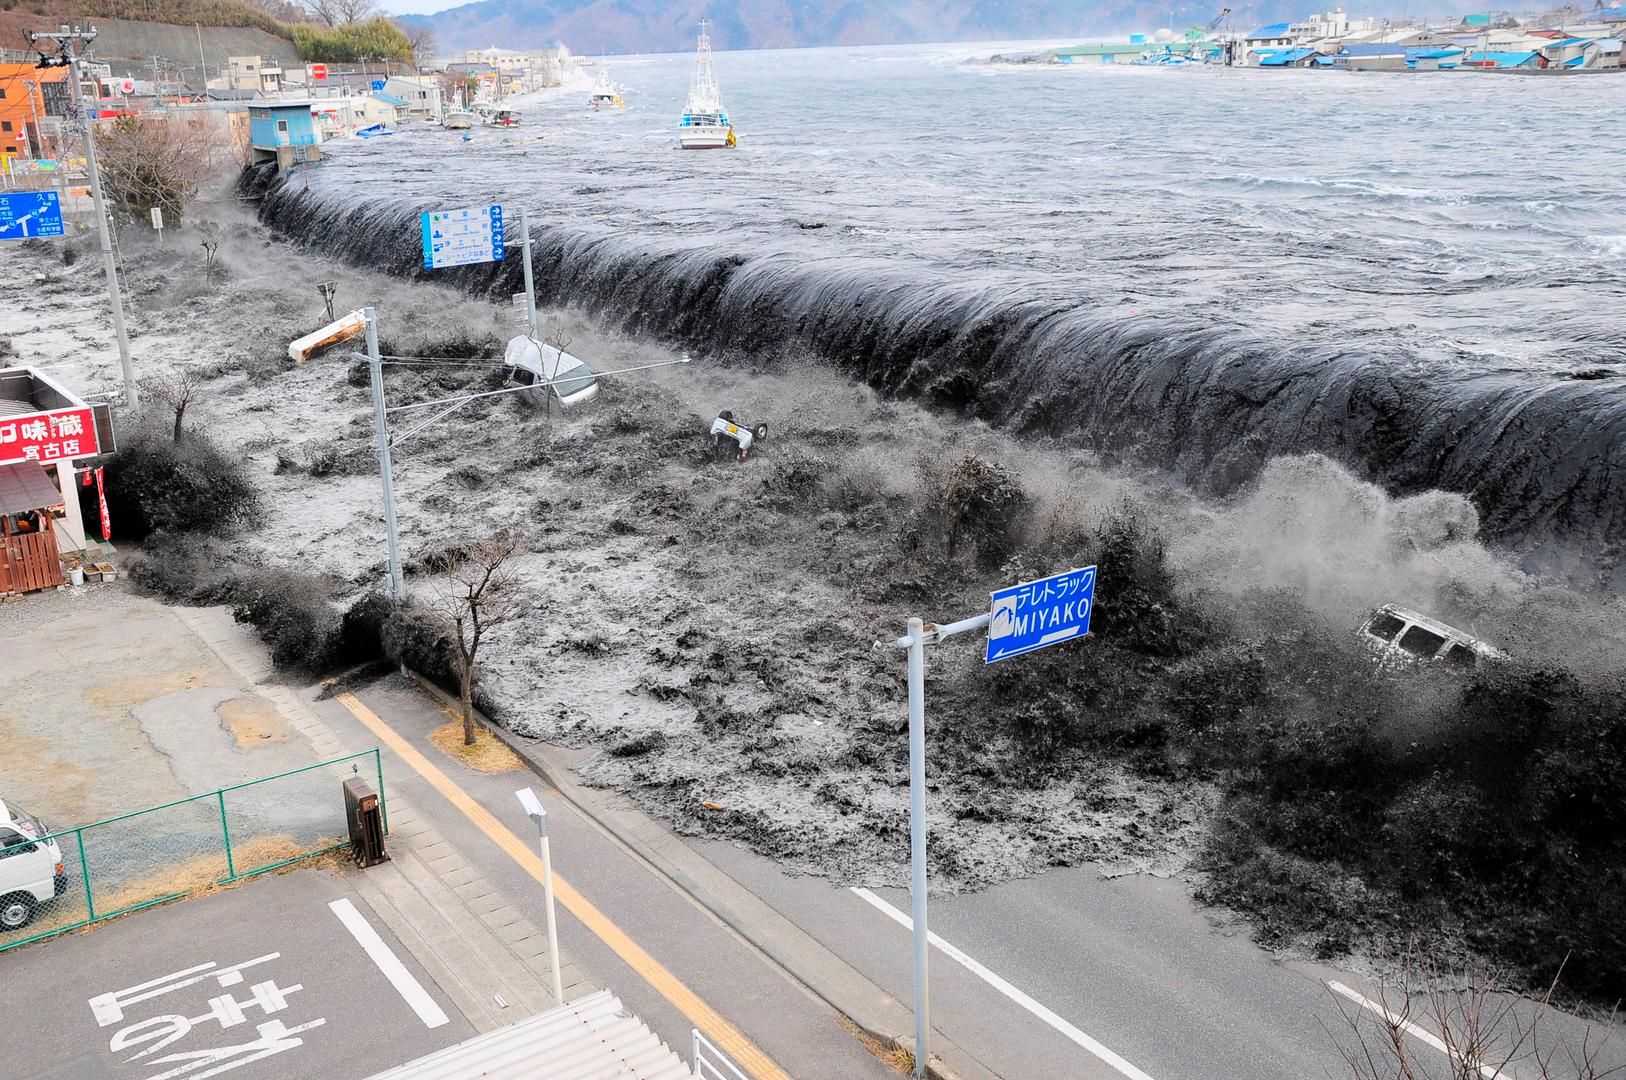 Razorni val približava se gradu Miyakou nakon što je potres magnitude 8,9 pogodio istoimeno područje u Japanu 11. ožujka 2011.